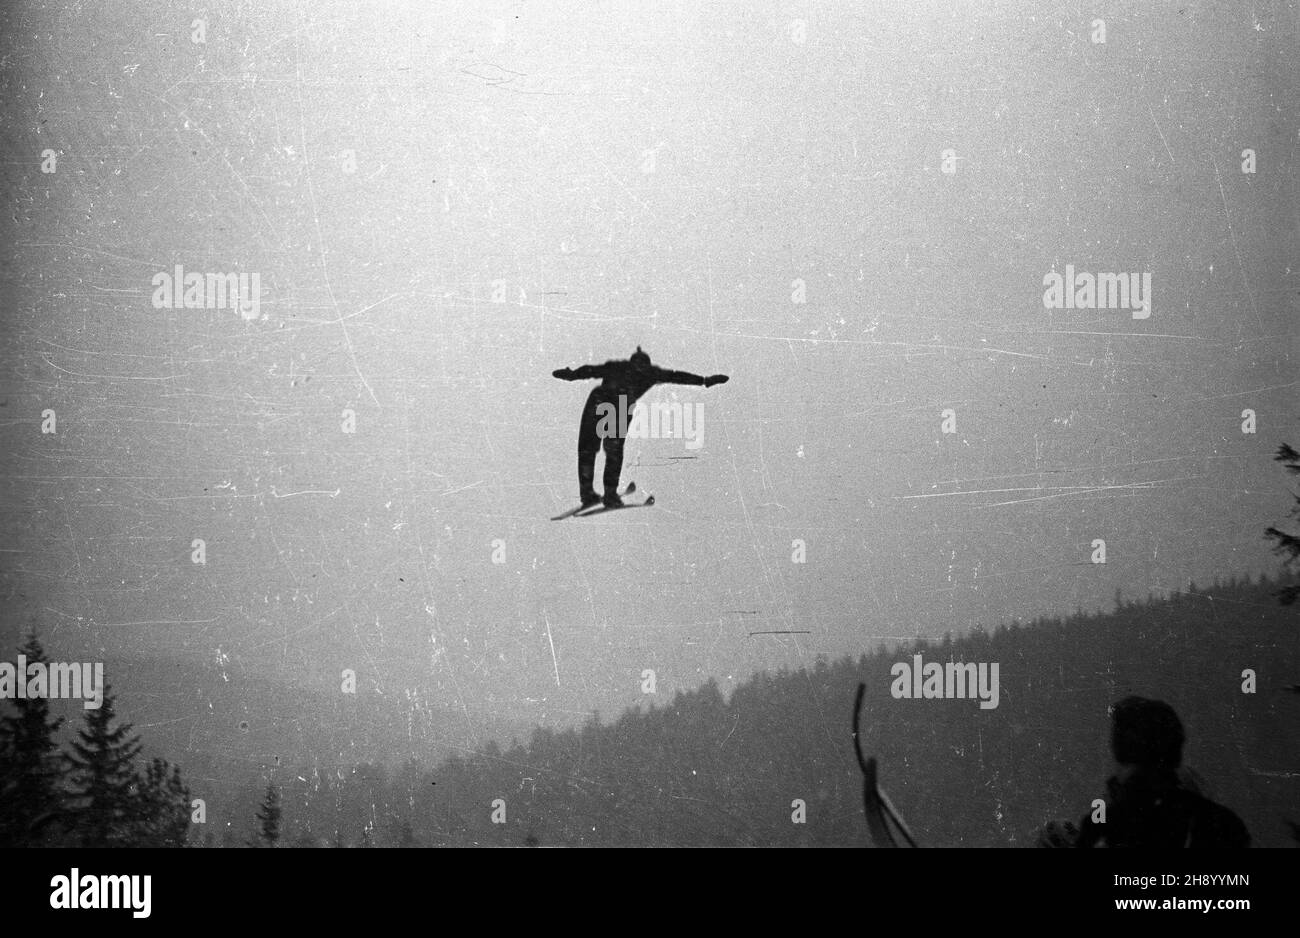 Karpacz (Orlinek), 1947-01-01. Inauguracja skoczni narciarskiej. Nz. pierwszy skok wykonuje Stanis³aw Marusarz. bb/gr  PAP/W³adys³aw Komorowski      Karpacz (Orlinek), January 1, 1947. Ski jump opening. Pictured: Stanislaw Marusarz begins a competition.  bb/gr  PAP/Wladyslaw Komorowski Stock Photo